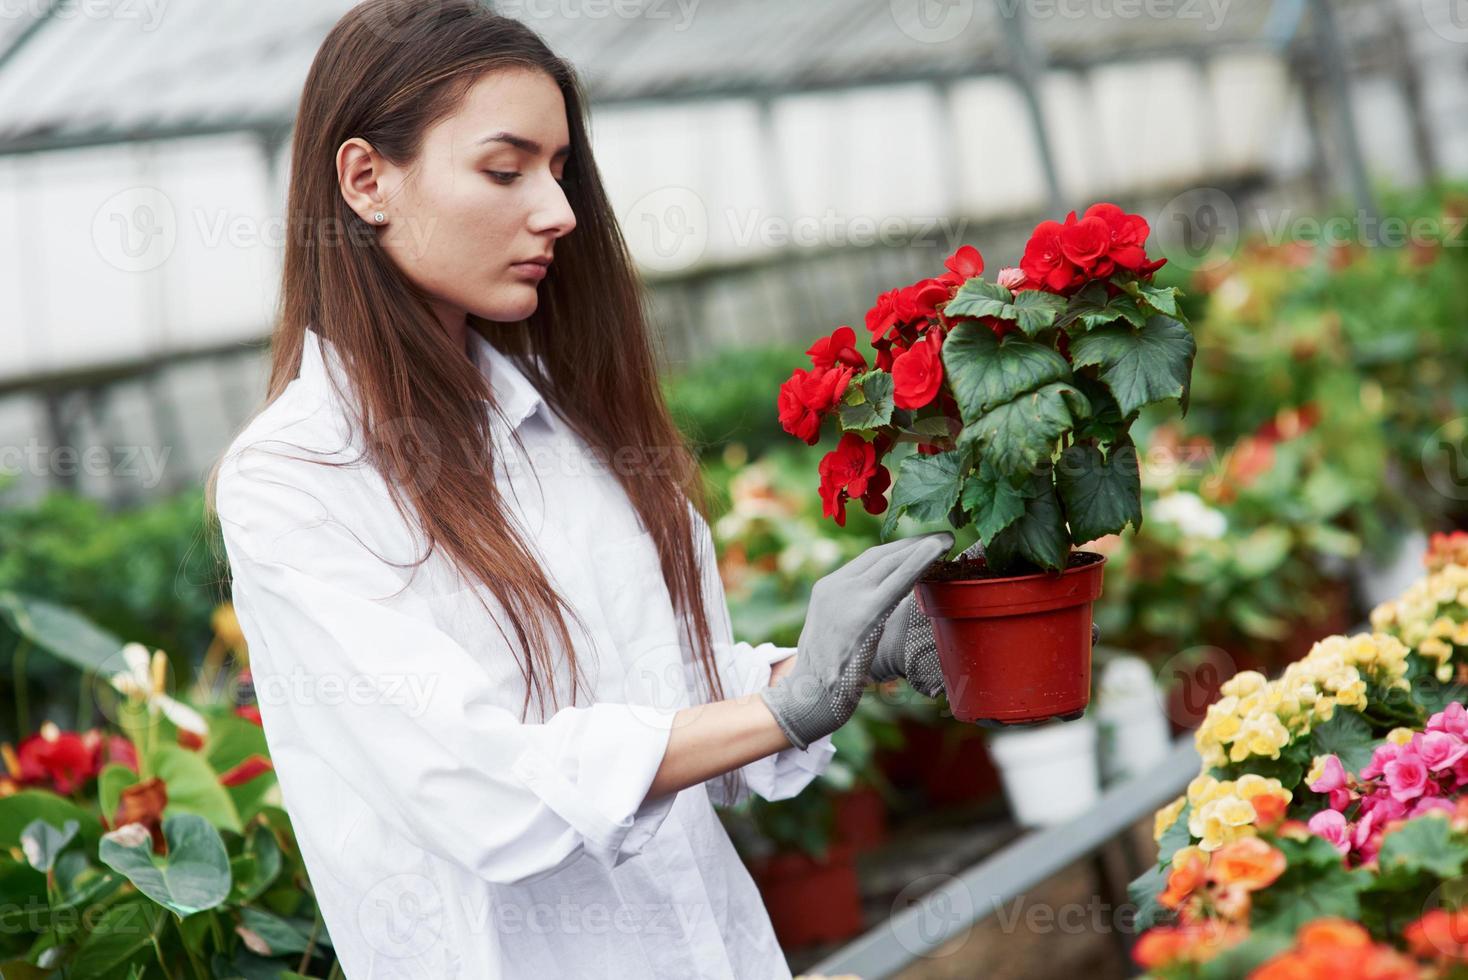 lof Wennen aan evolutie meisje met handschoenen aan haar handen met pot met rode bloemen 4271127  stockfoto bij Vecteezy